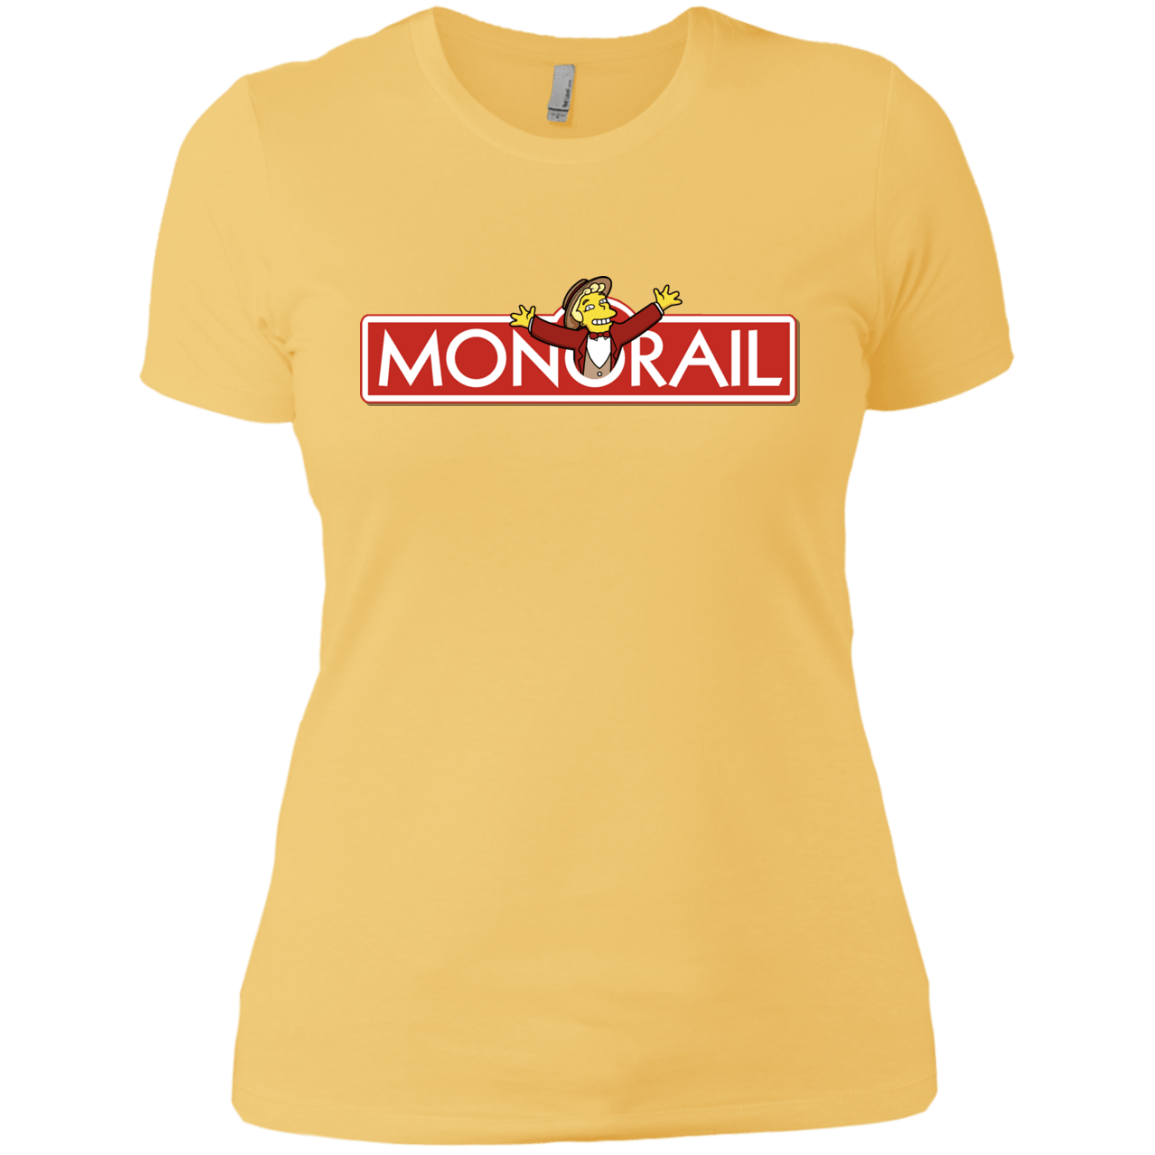 T-Shirts Banana Cream/ / X-Small Monorail Women's Premium T-Shirt